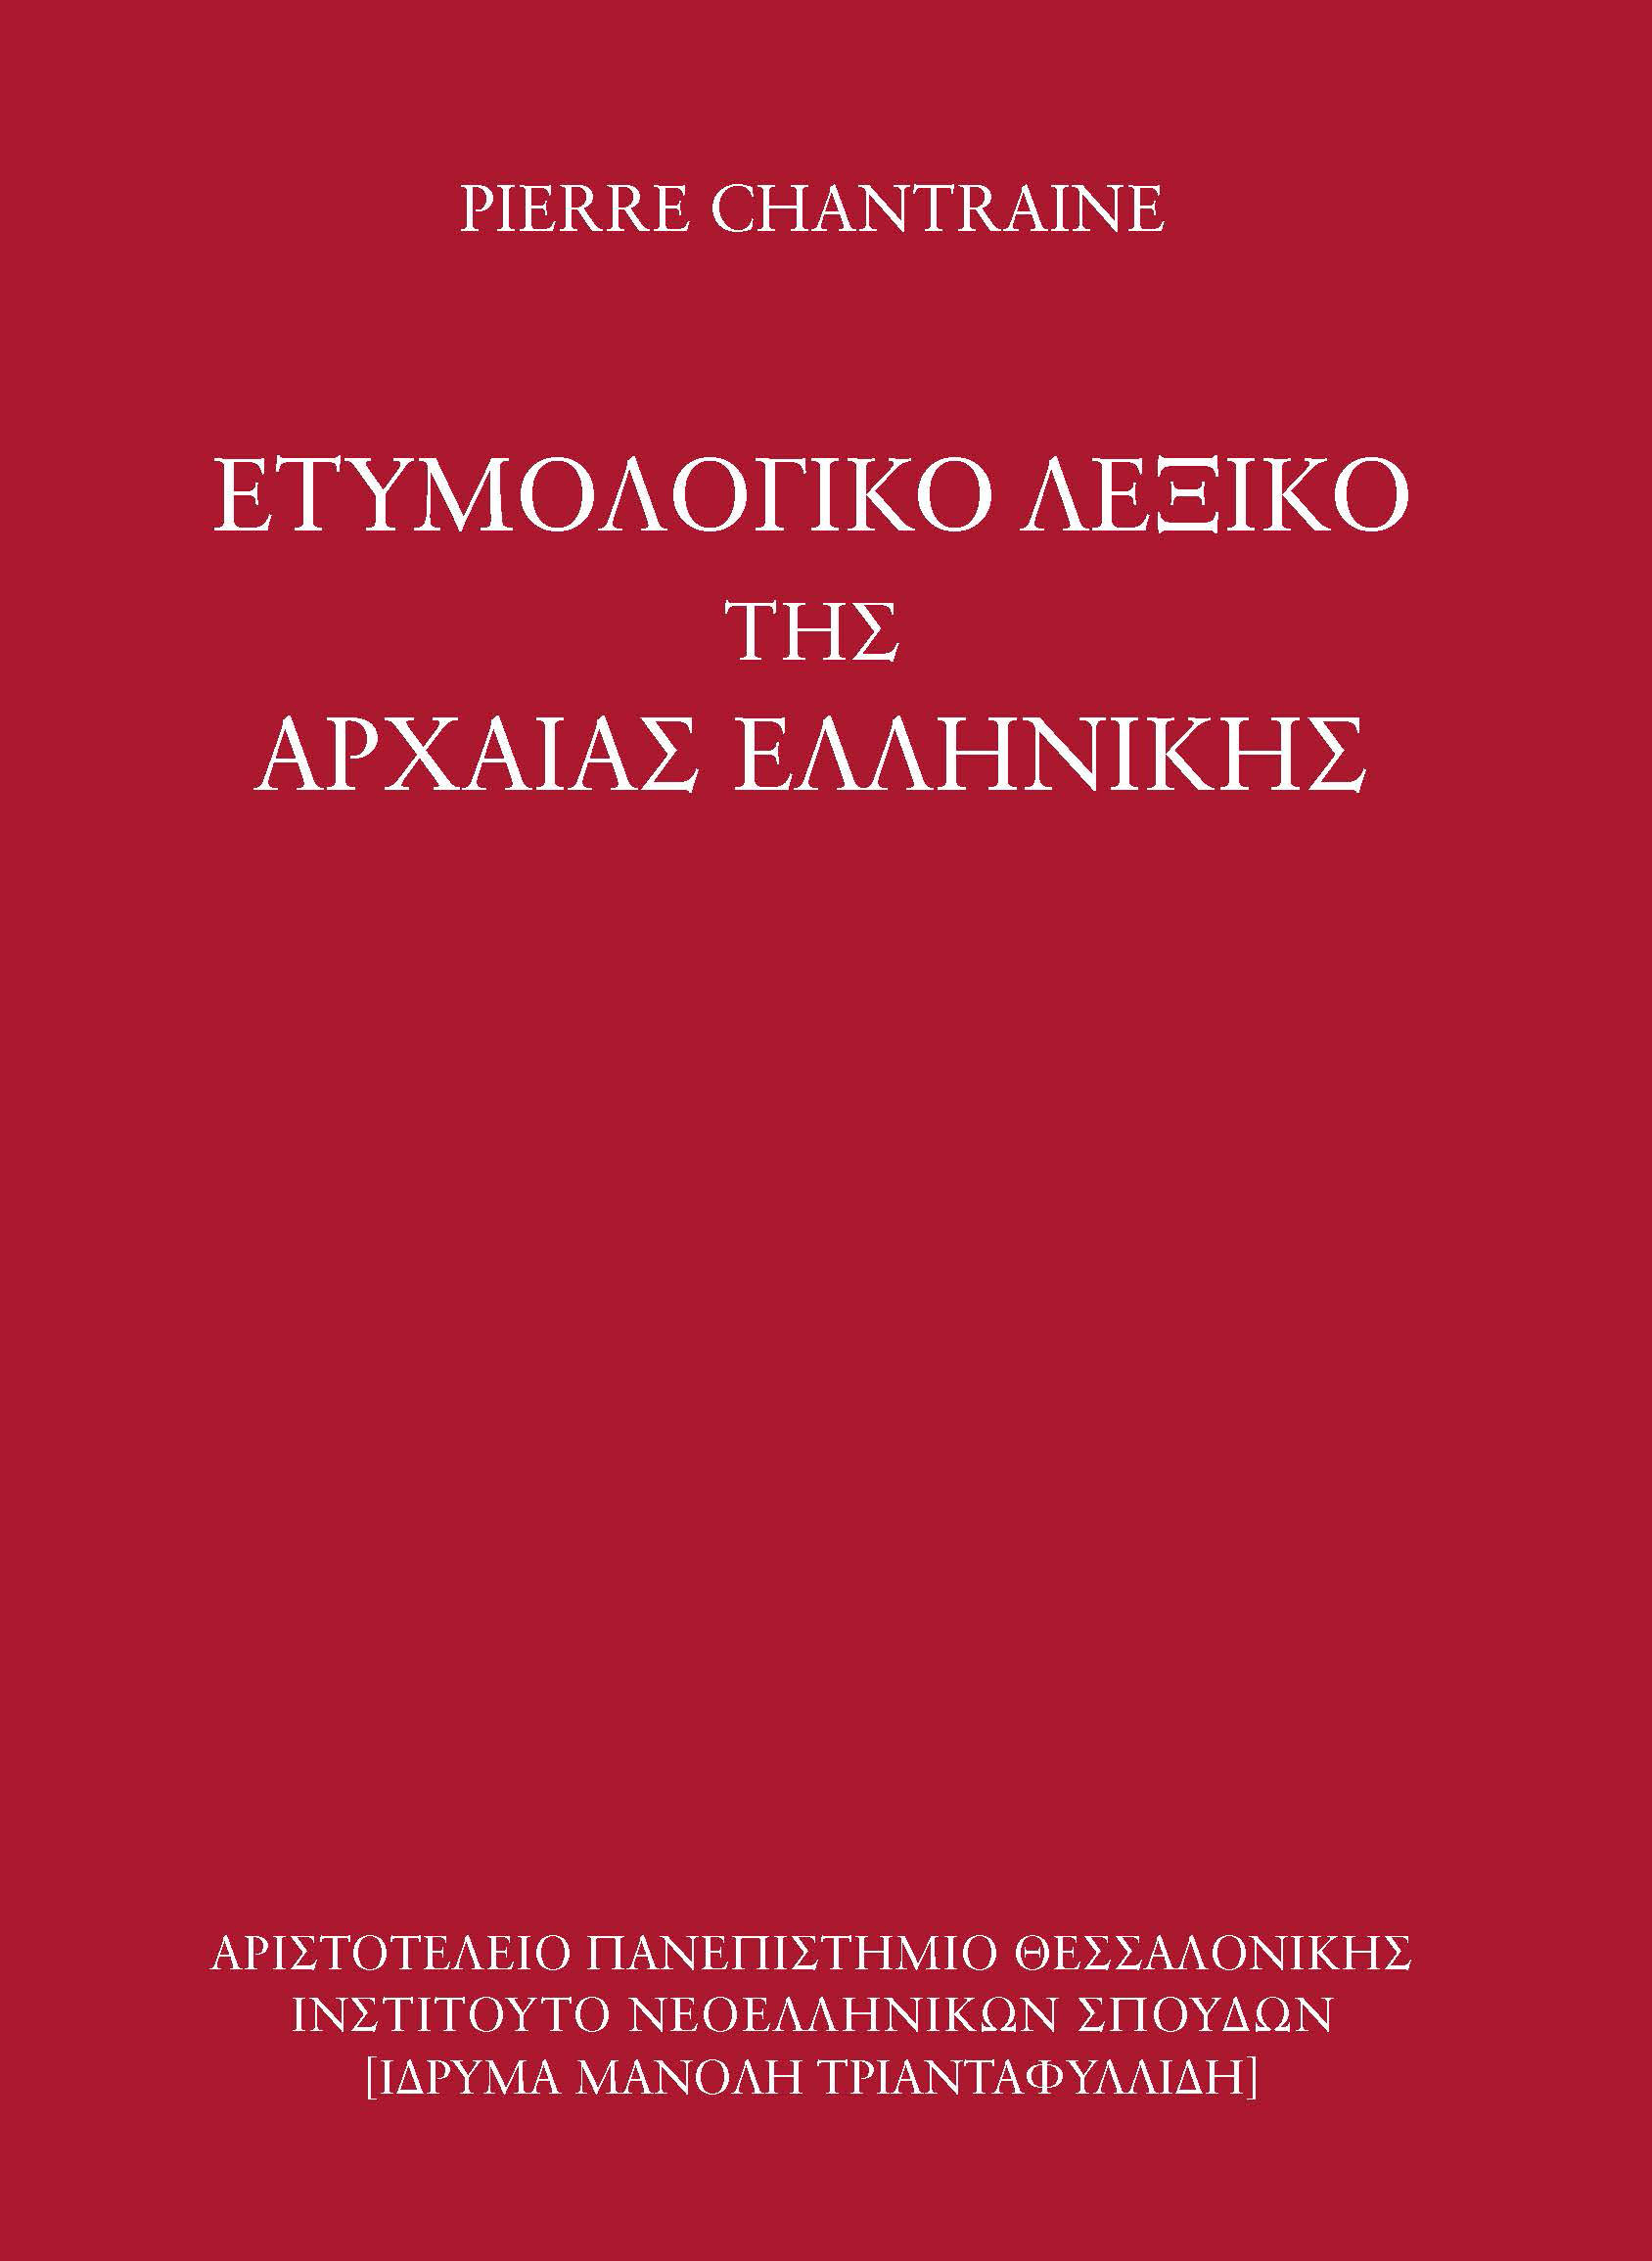 www.archaiologia.gr